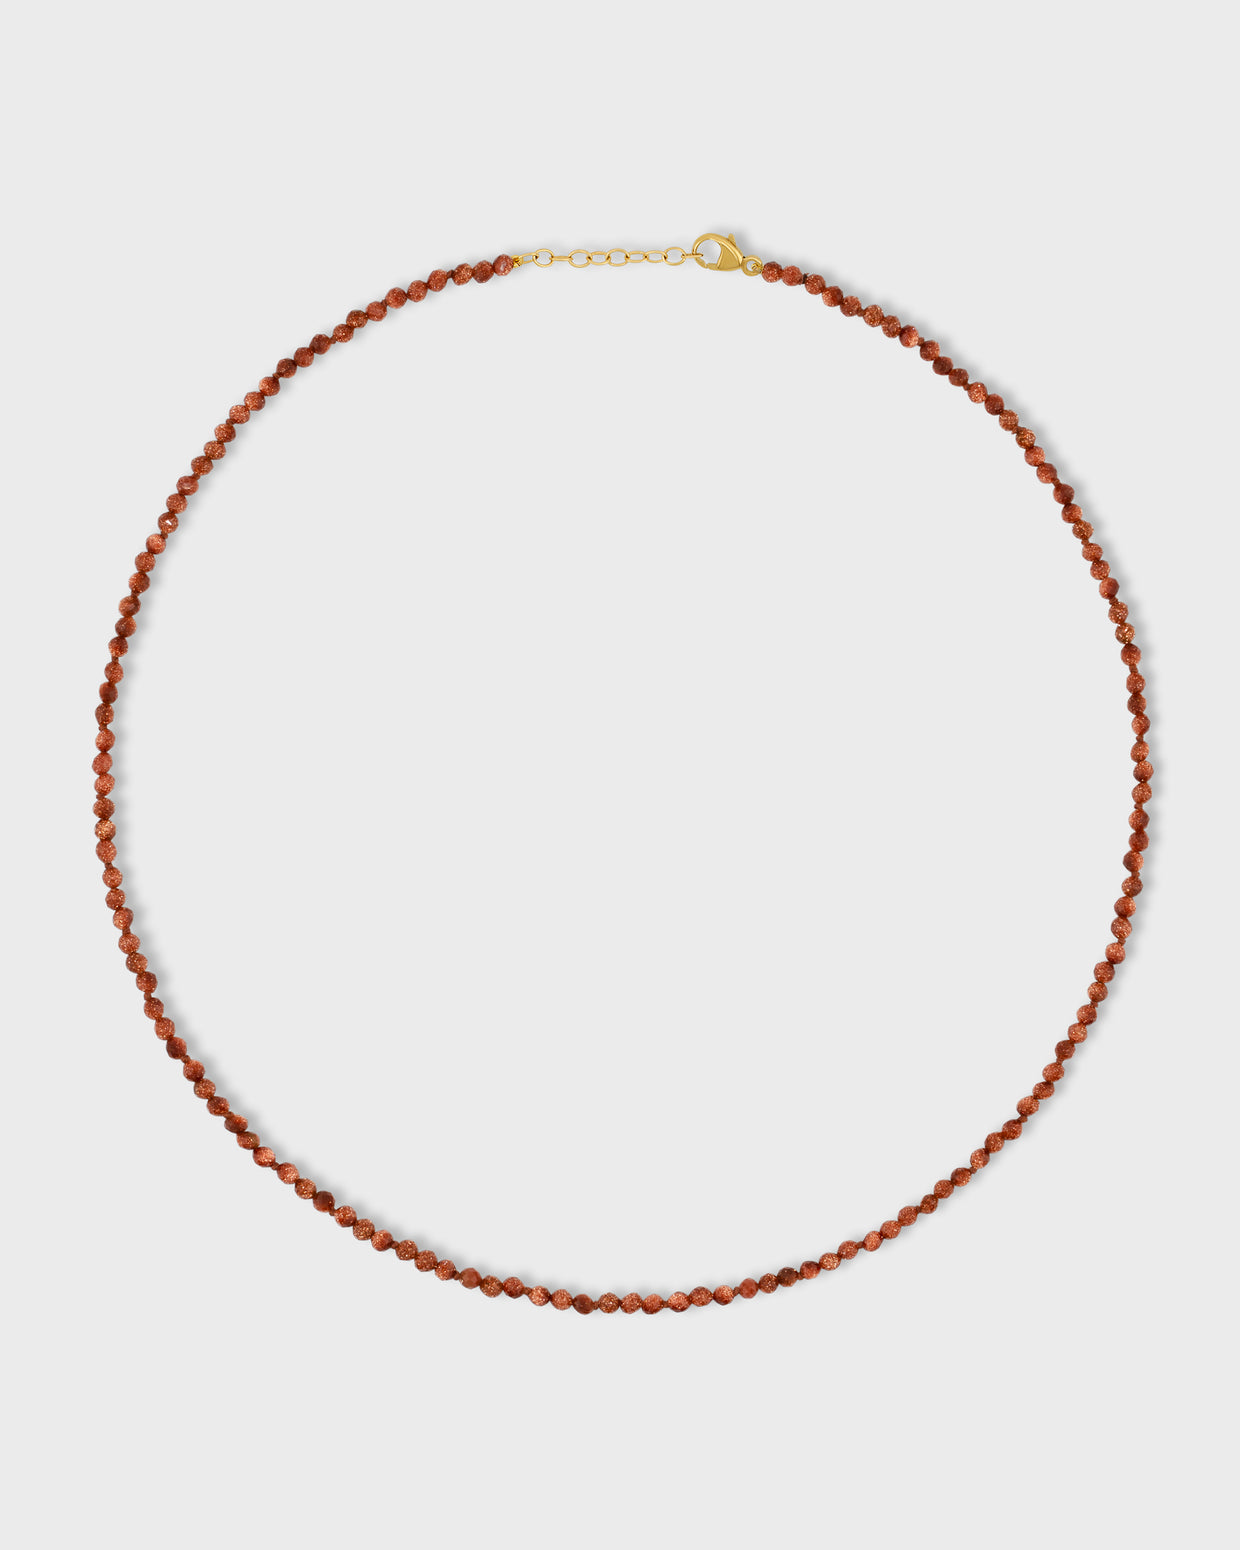 Arizona Sunstone Necklace